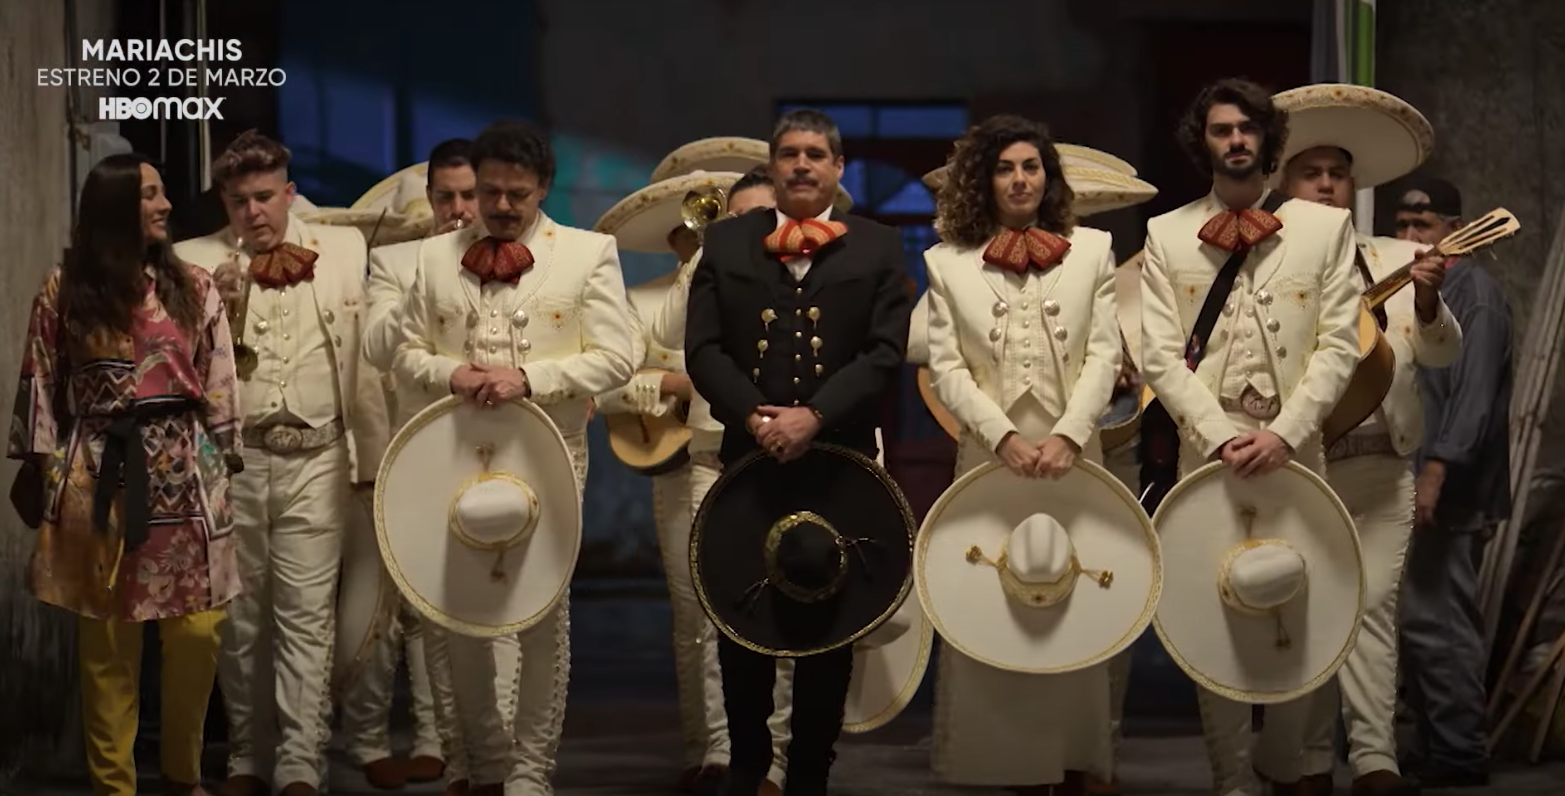 $!Lanza HBO Max el trailer oficial de ‘Mariachis’ con Pedro Fernández